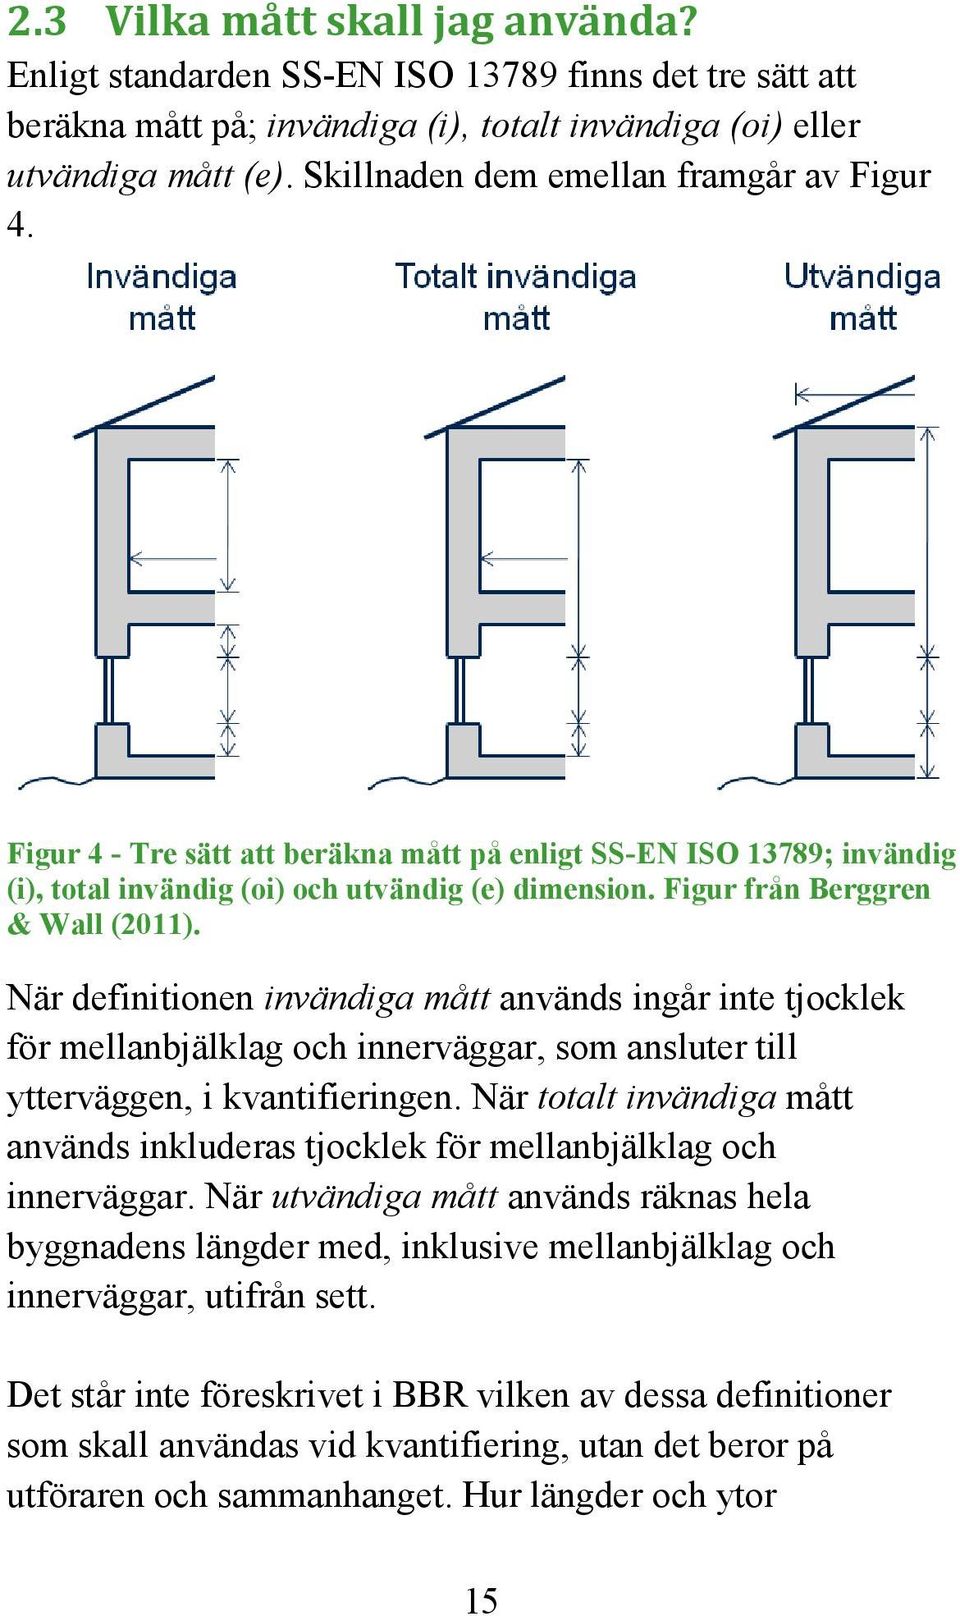 Figur från Berggren & Wall (2011). När definitionen invändiga mått används ingår inte tjocklek för mellanbjälklag och innerväggar, som ansluter till ytterväggen, i kvantifieringen.